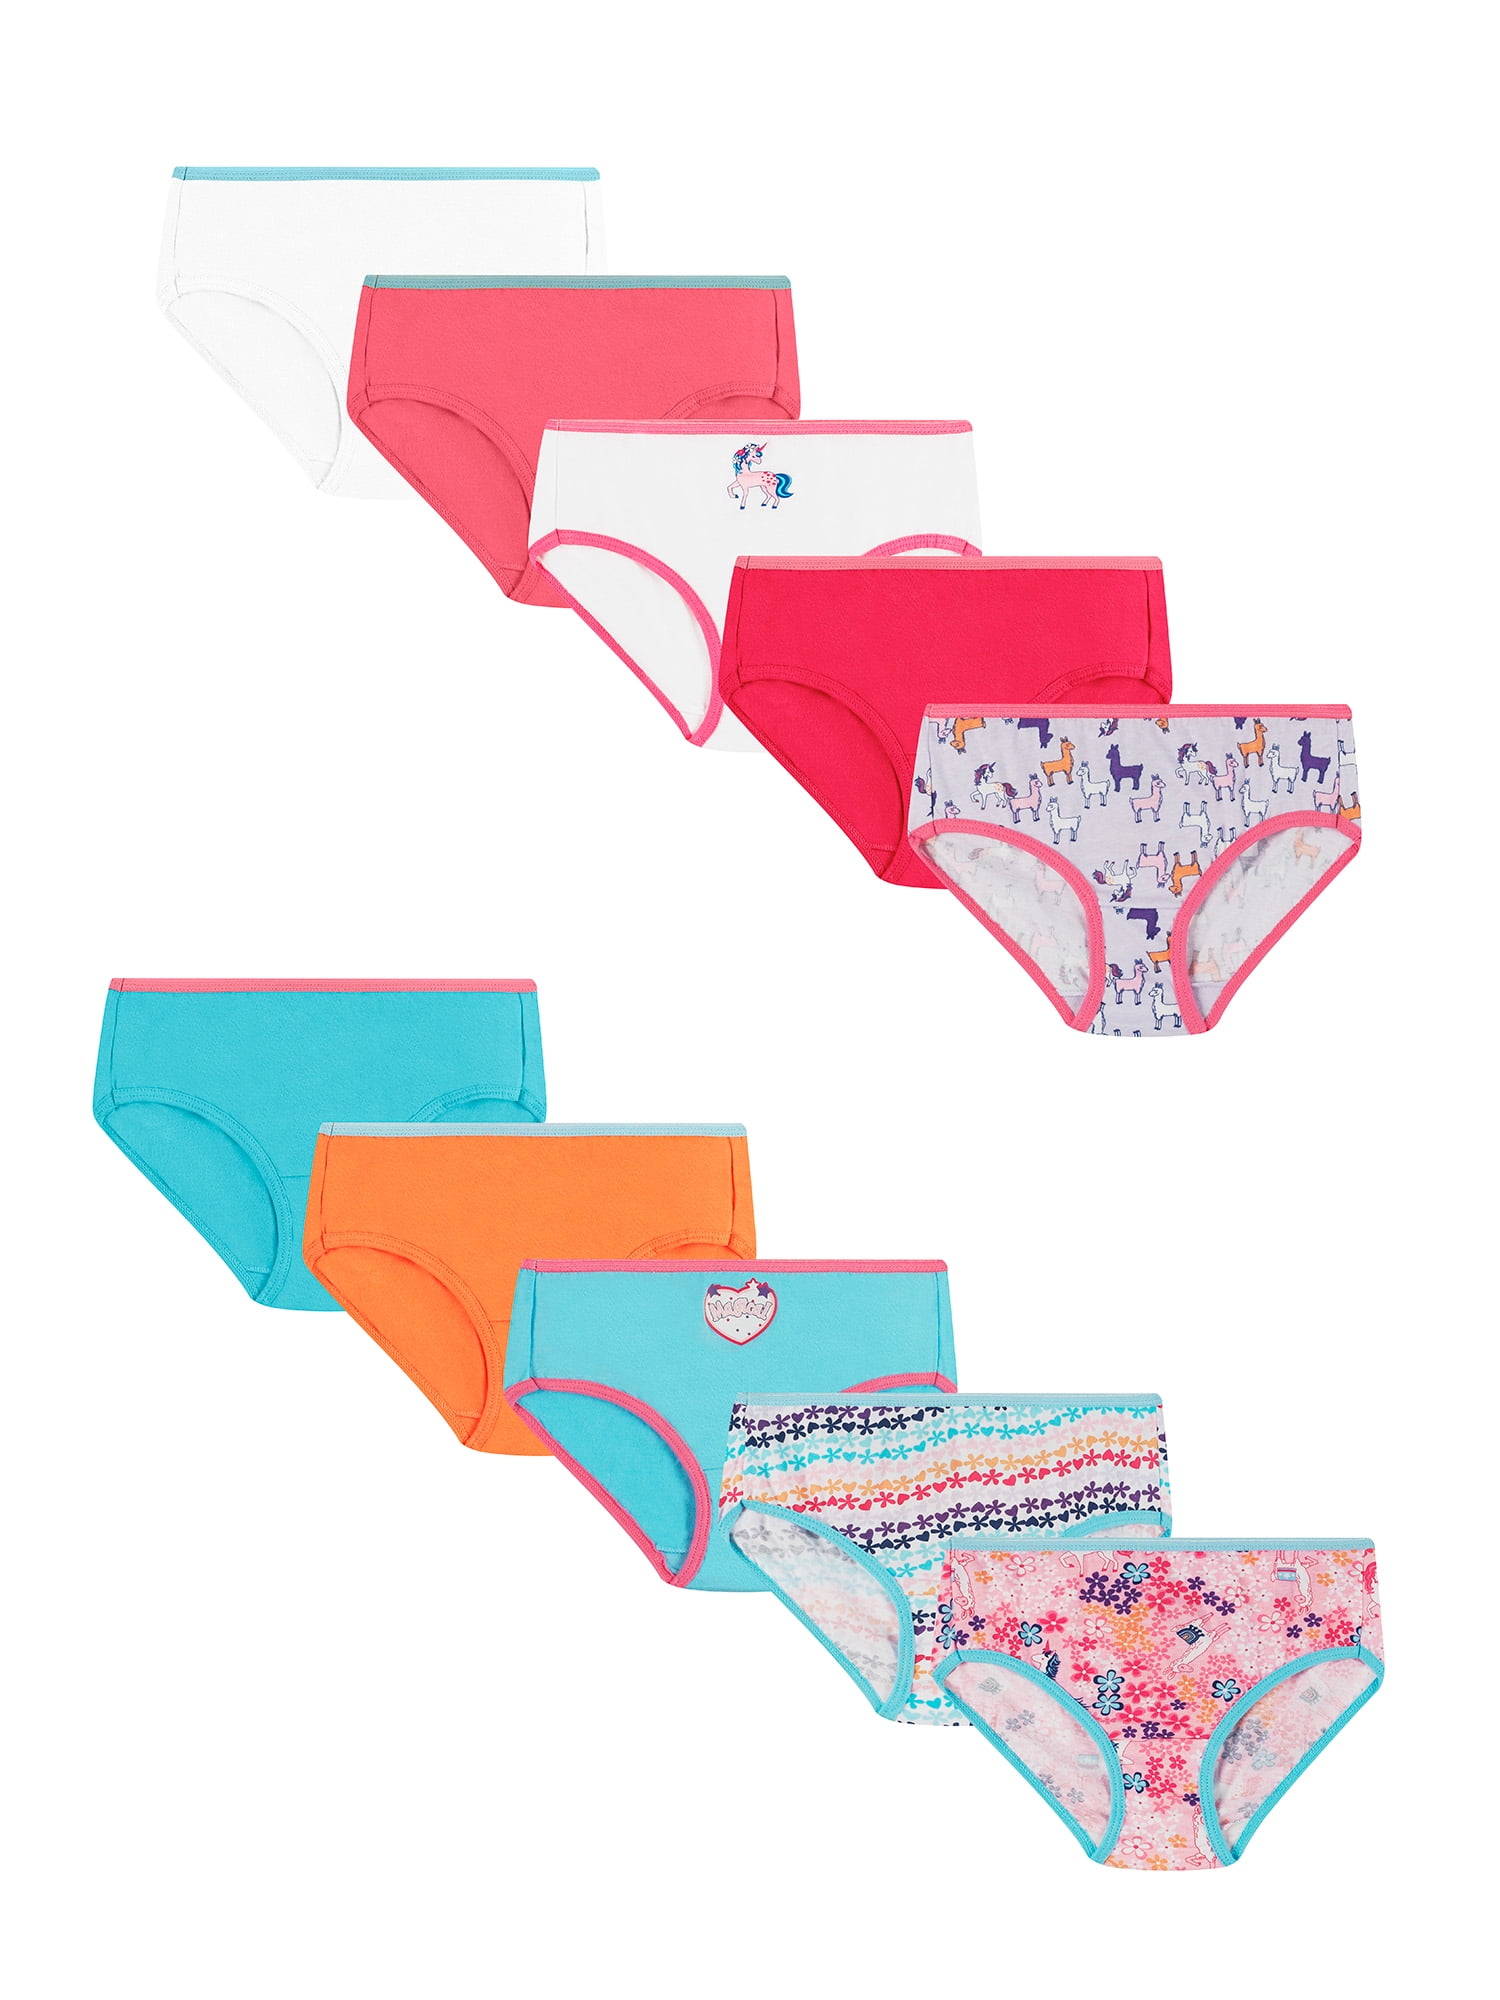 Hanes Girls' Tagless Super Soft Cotton Brief Underwear, 10 pack, Sizes 4-16